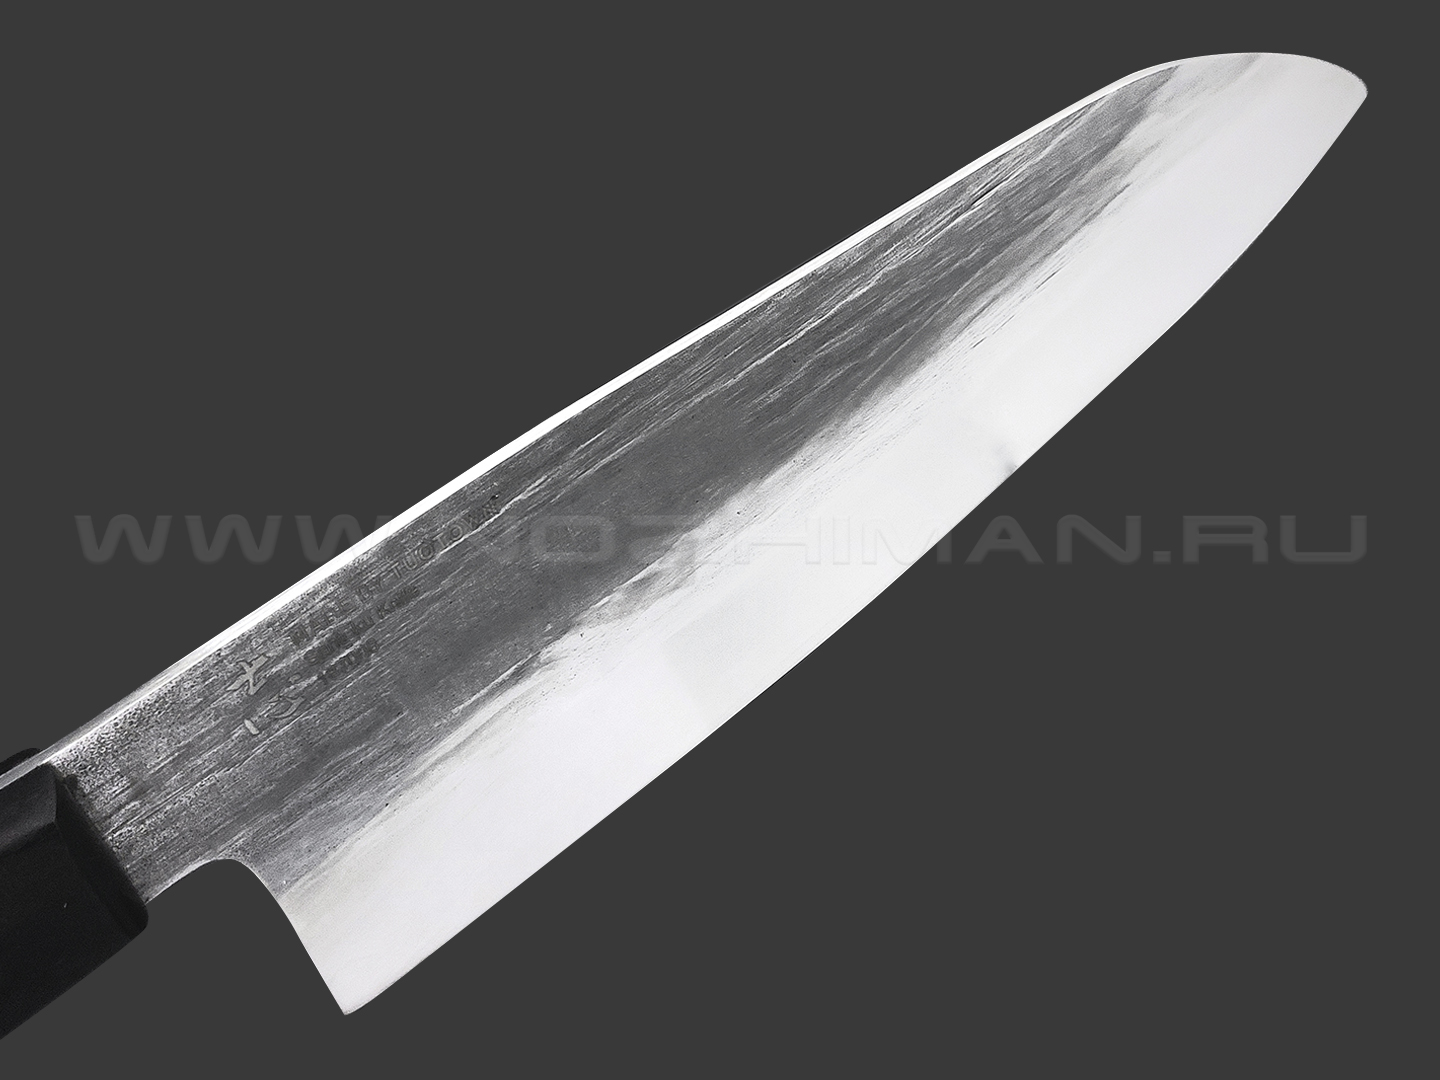 TuoTown кованый нож Santoku 18 см 187008 сталь Aus-10, рукоять Сандаловое дерево